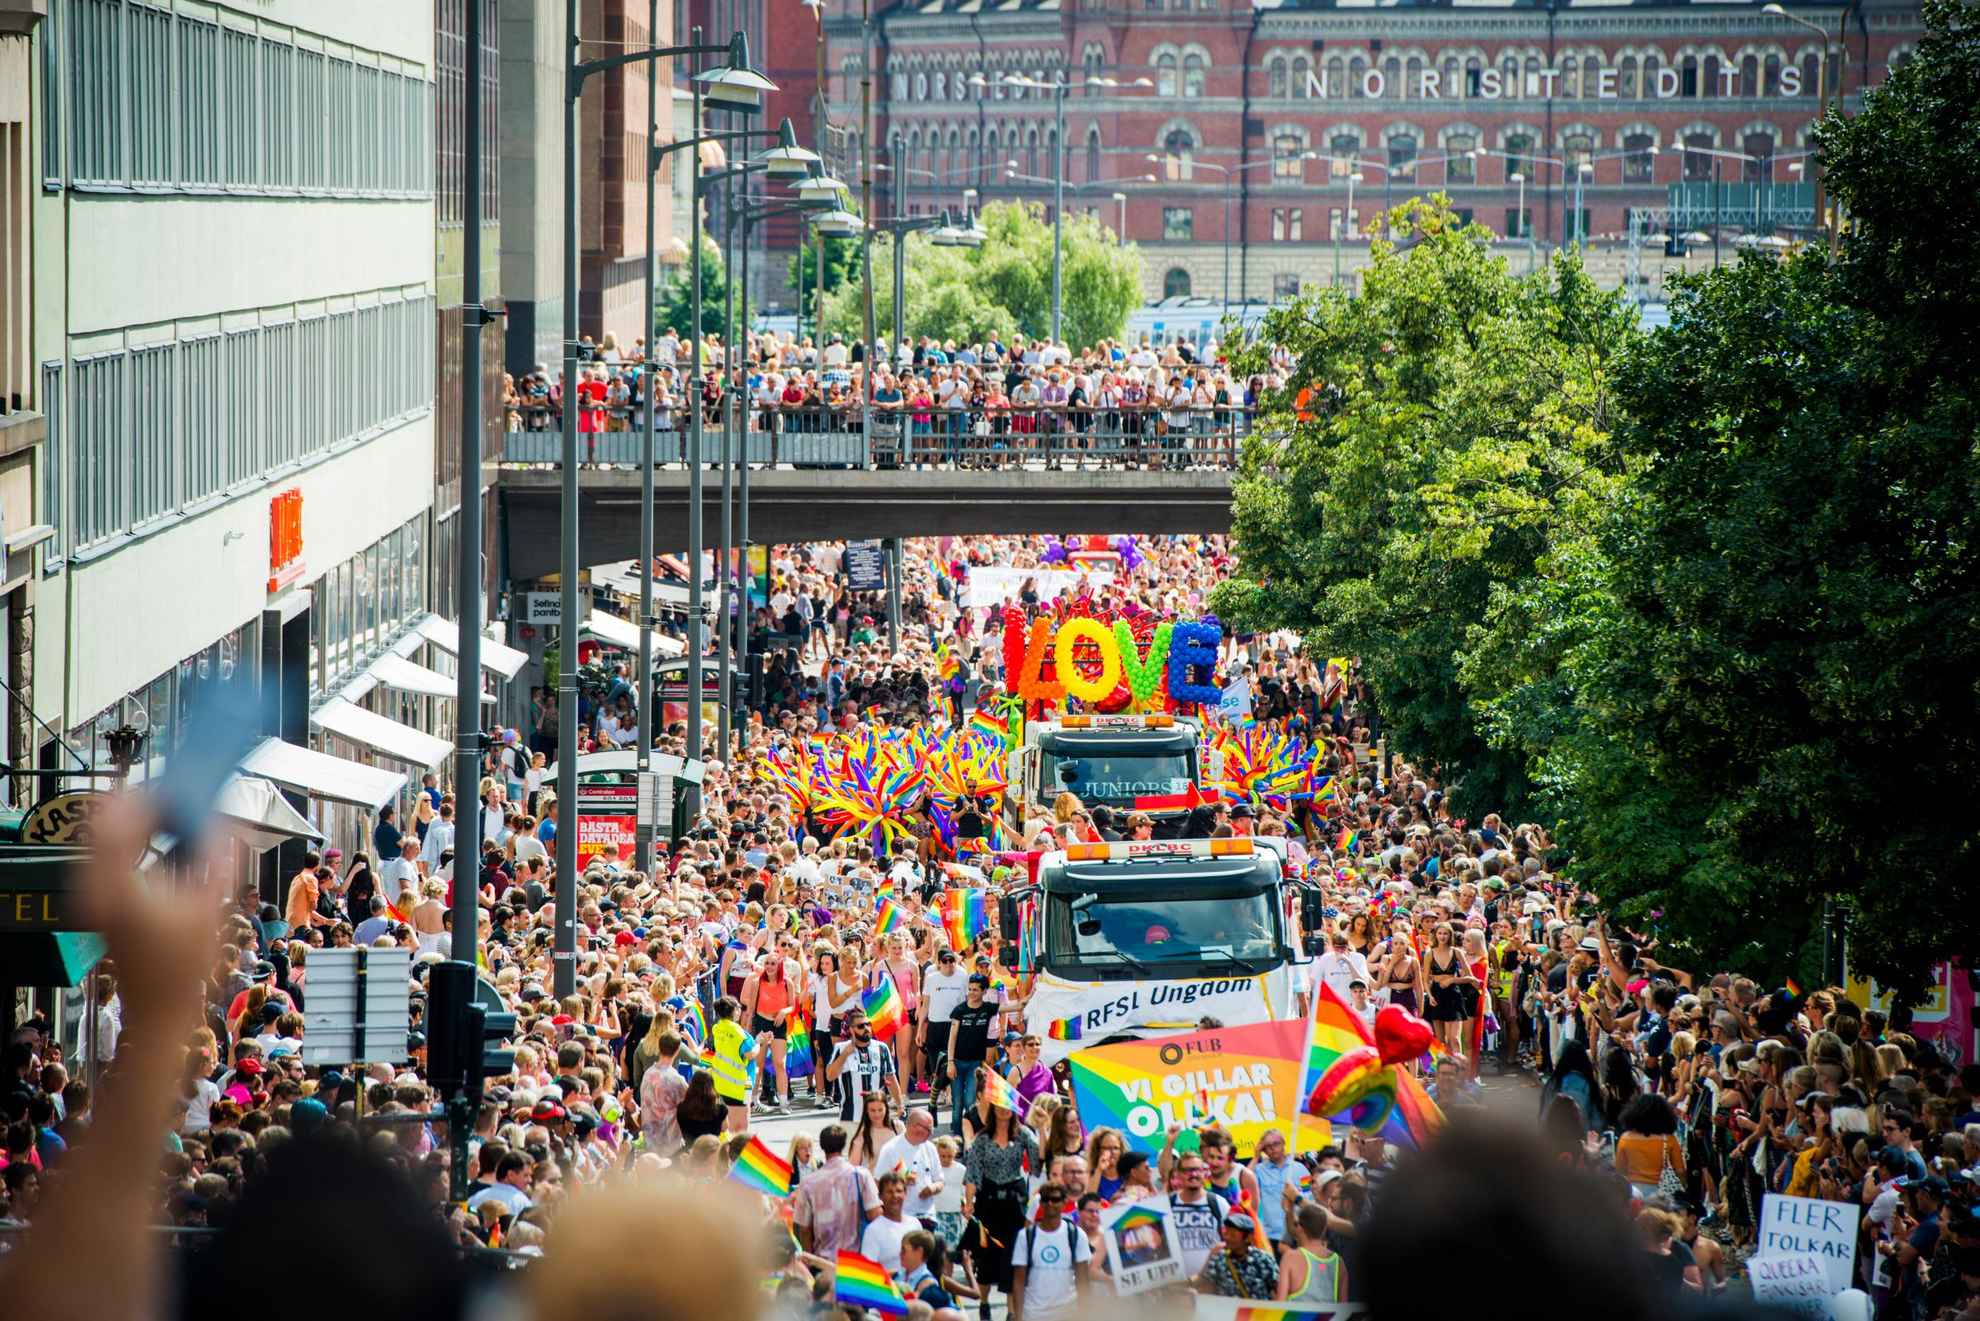 Zahlreiche Besuchende mit bunten Fahnen bei dem Pride Umzug in Stockholm.